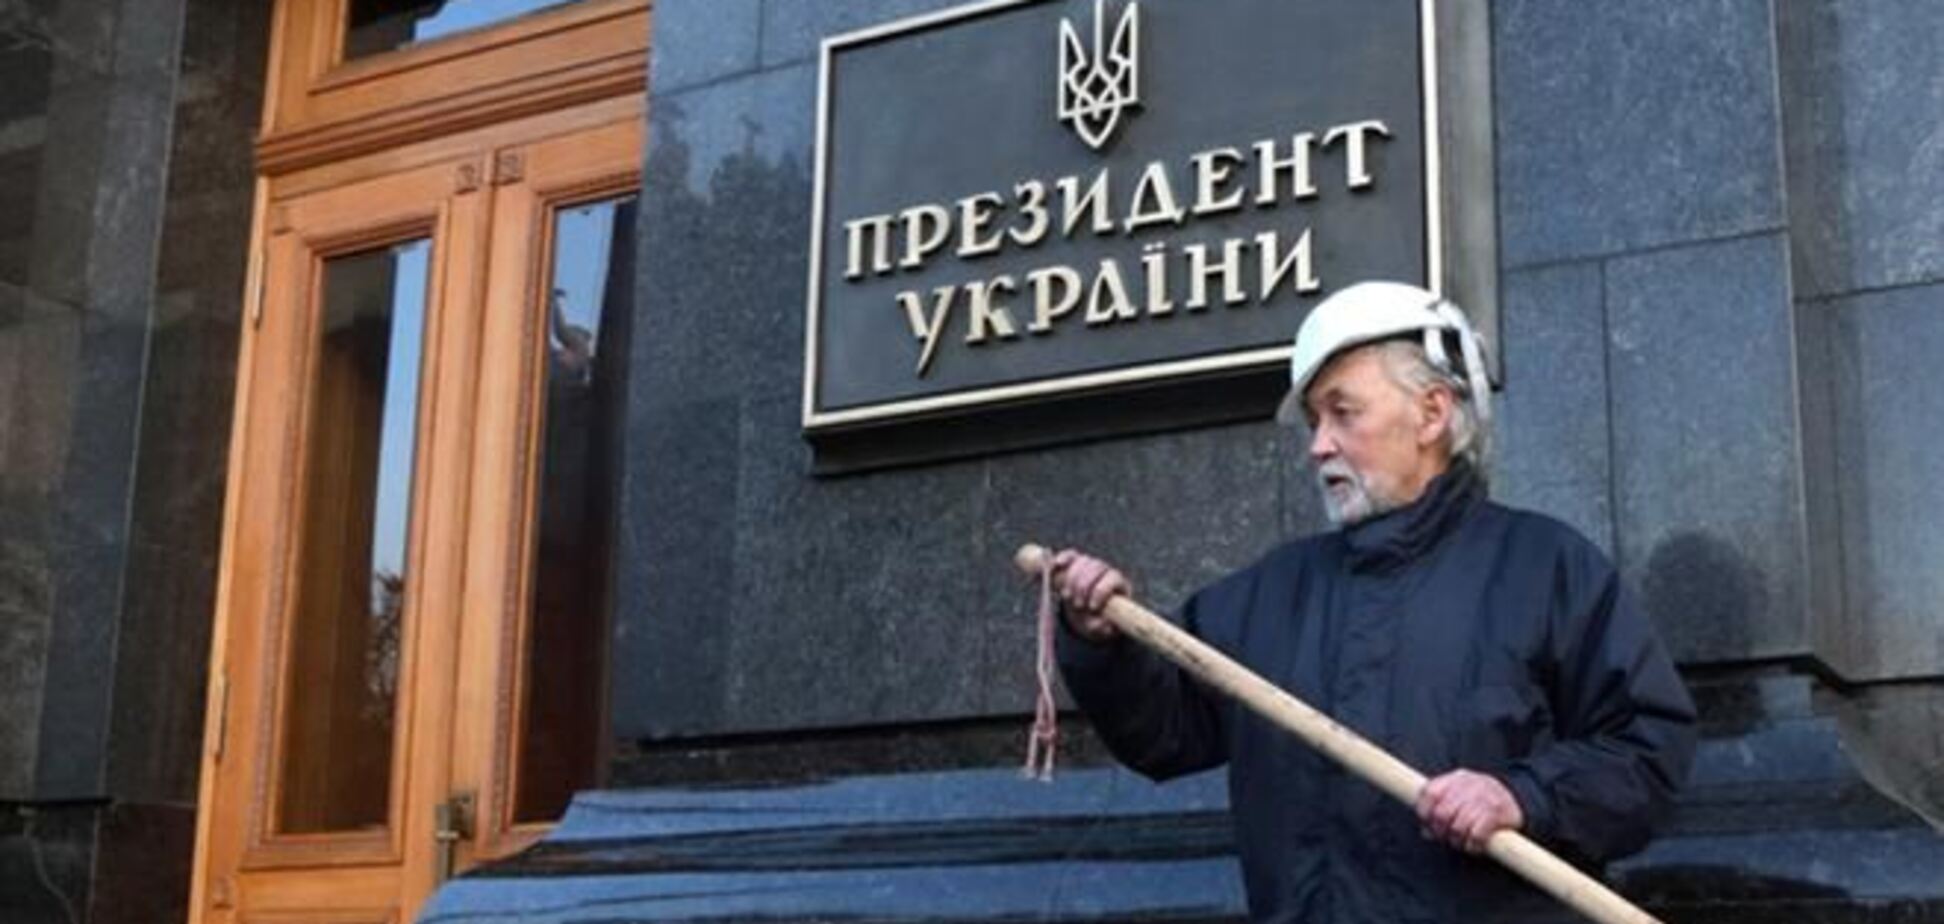 Громадські активісти почали моніторинг за ходом виборів президента України 